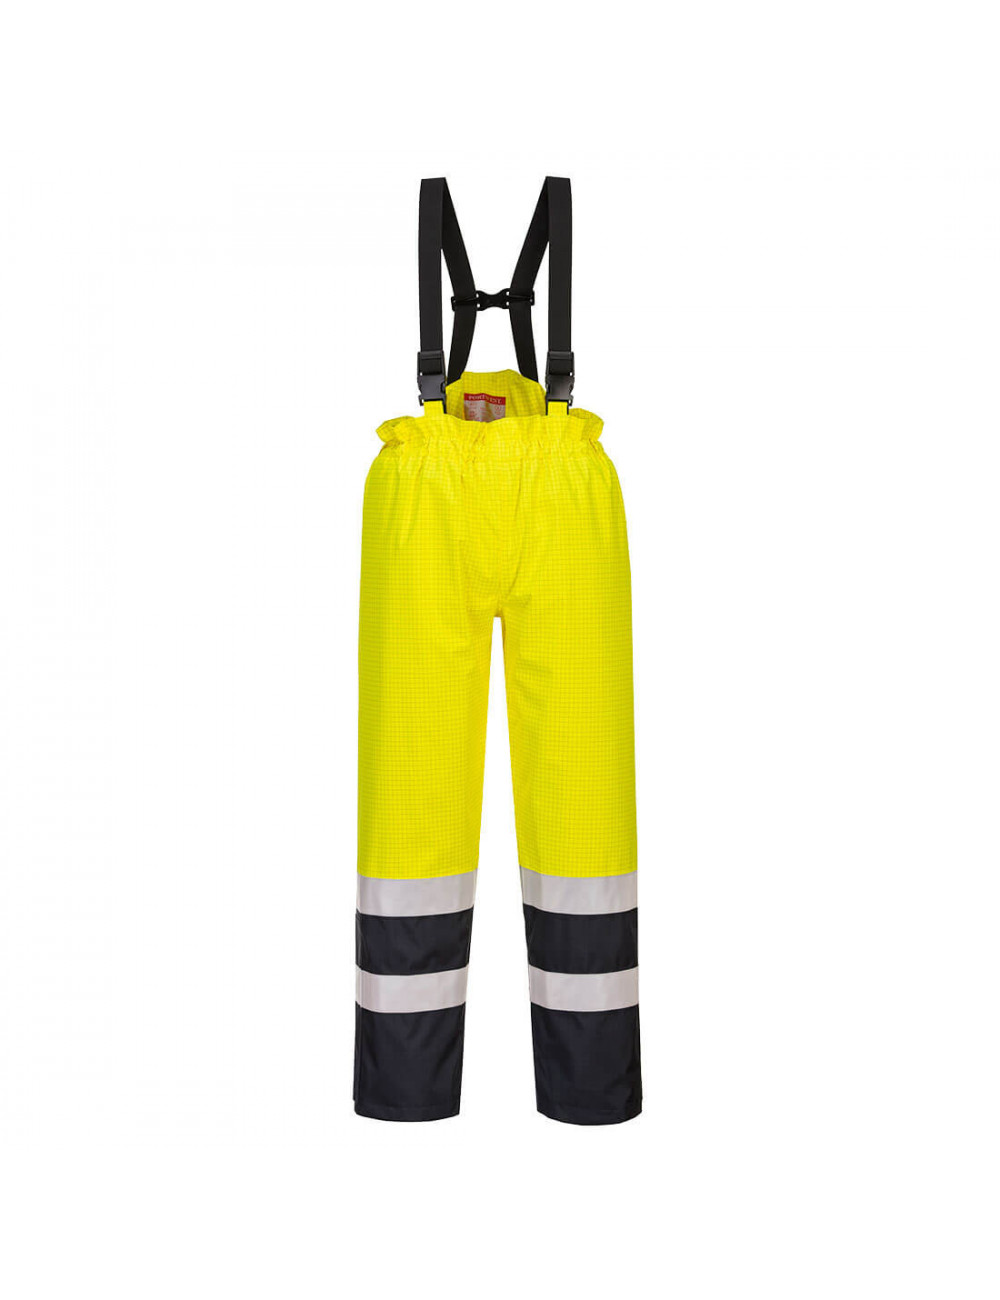 Ostrzegawcze spodnie ochronne bizflame rain żółto/granatowy Portwest